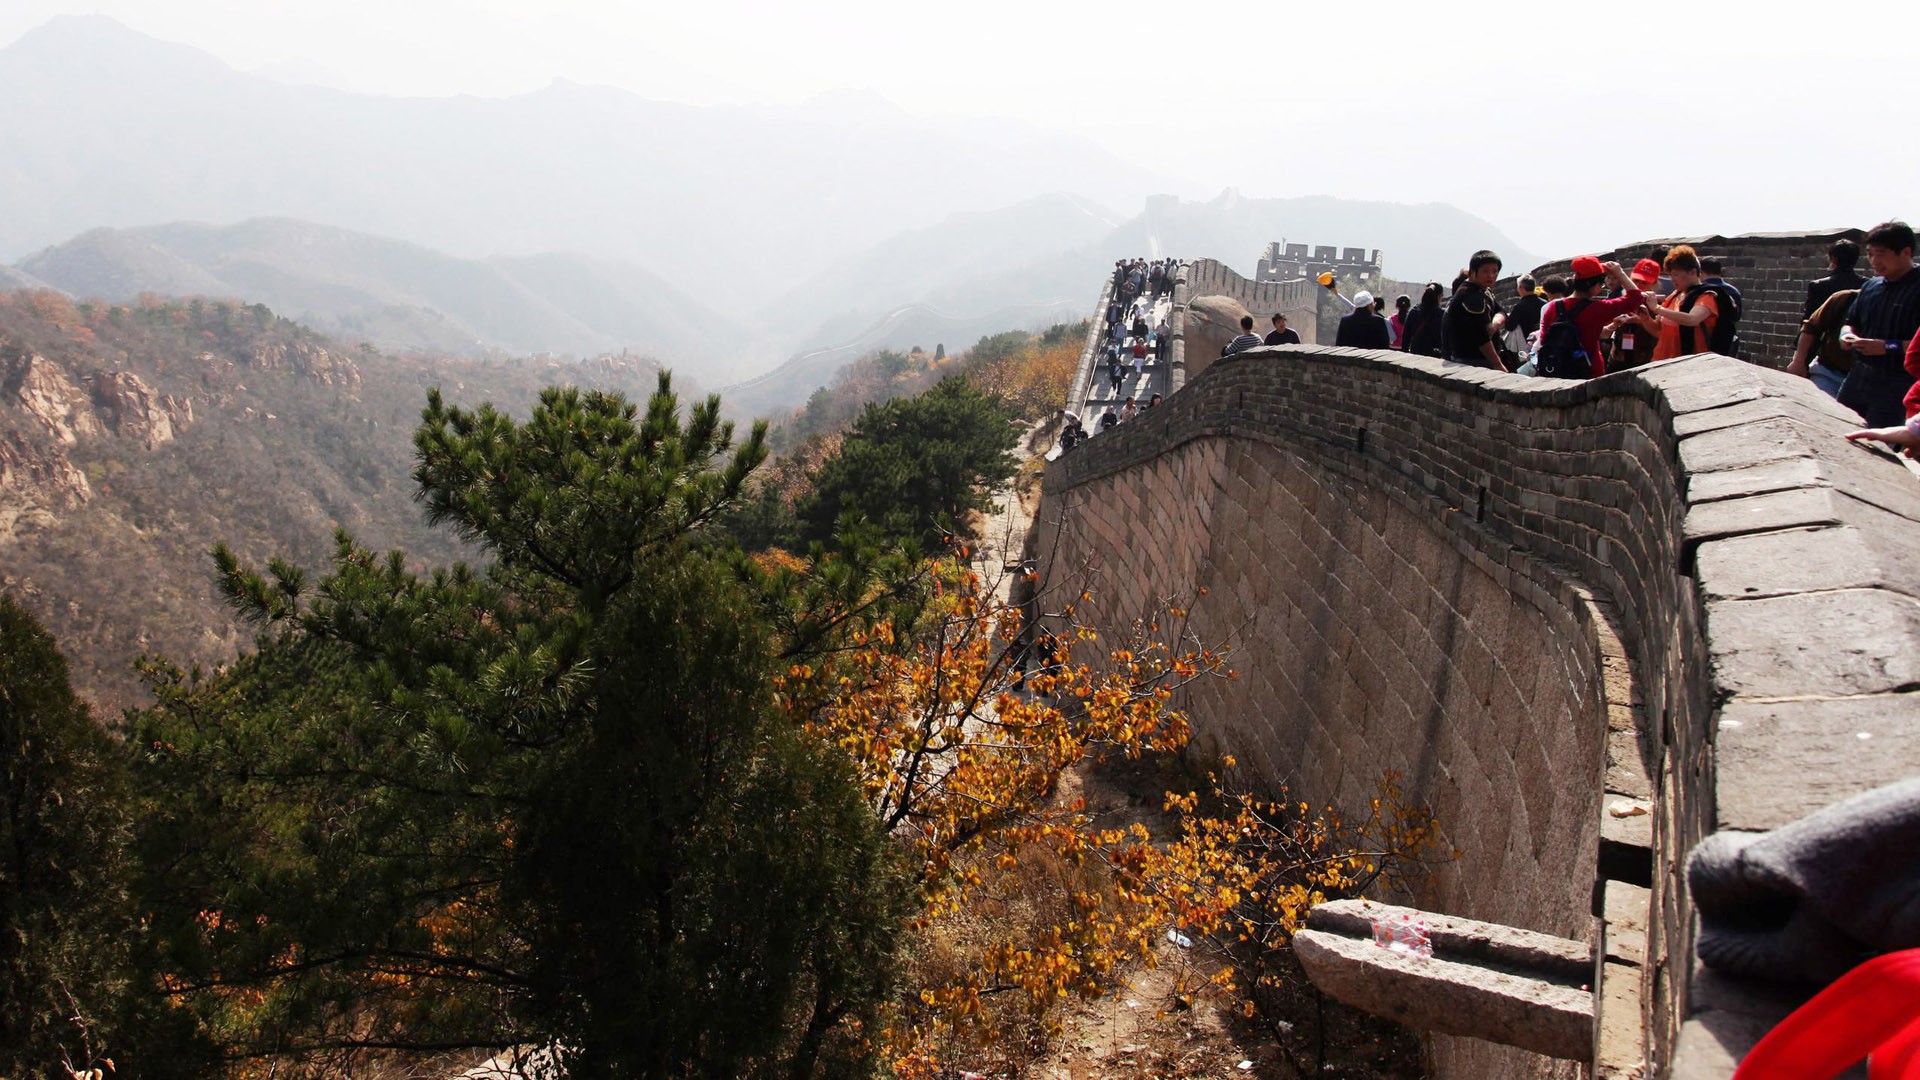 Beijing Tour - Badaling Great Wall (ggc works) #4 - 1920x1080